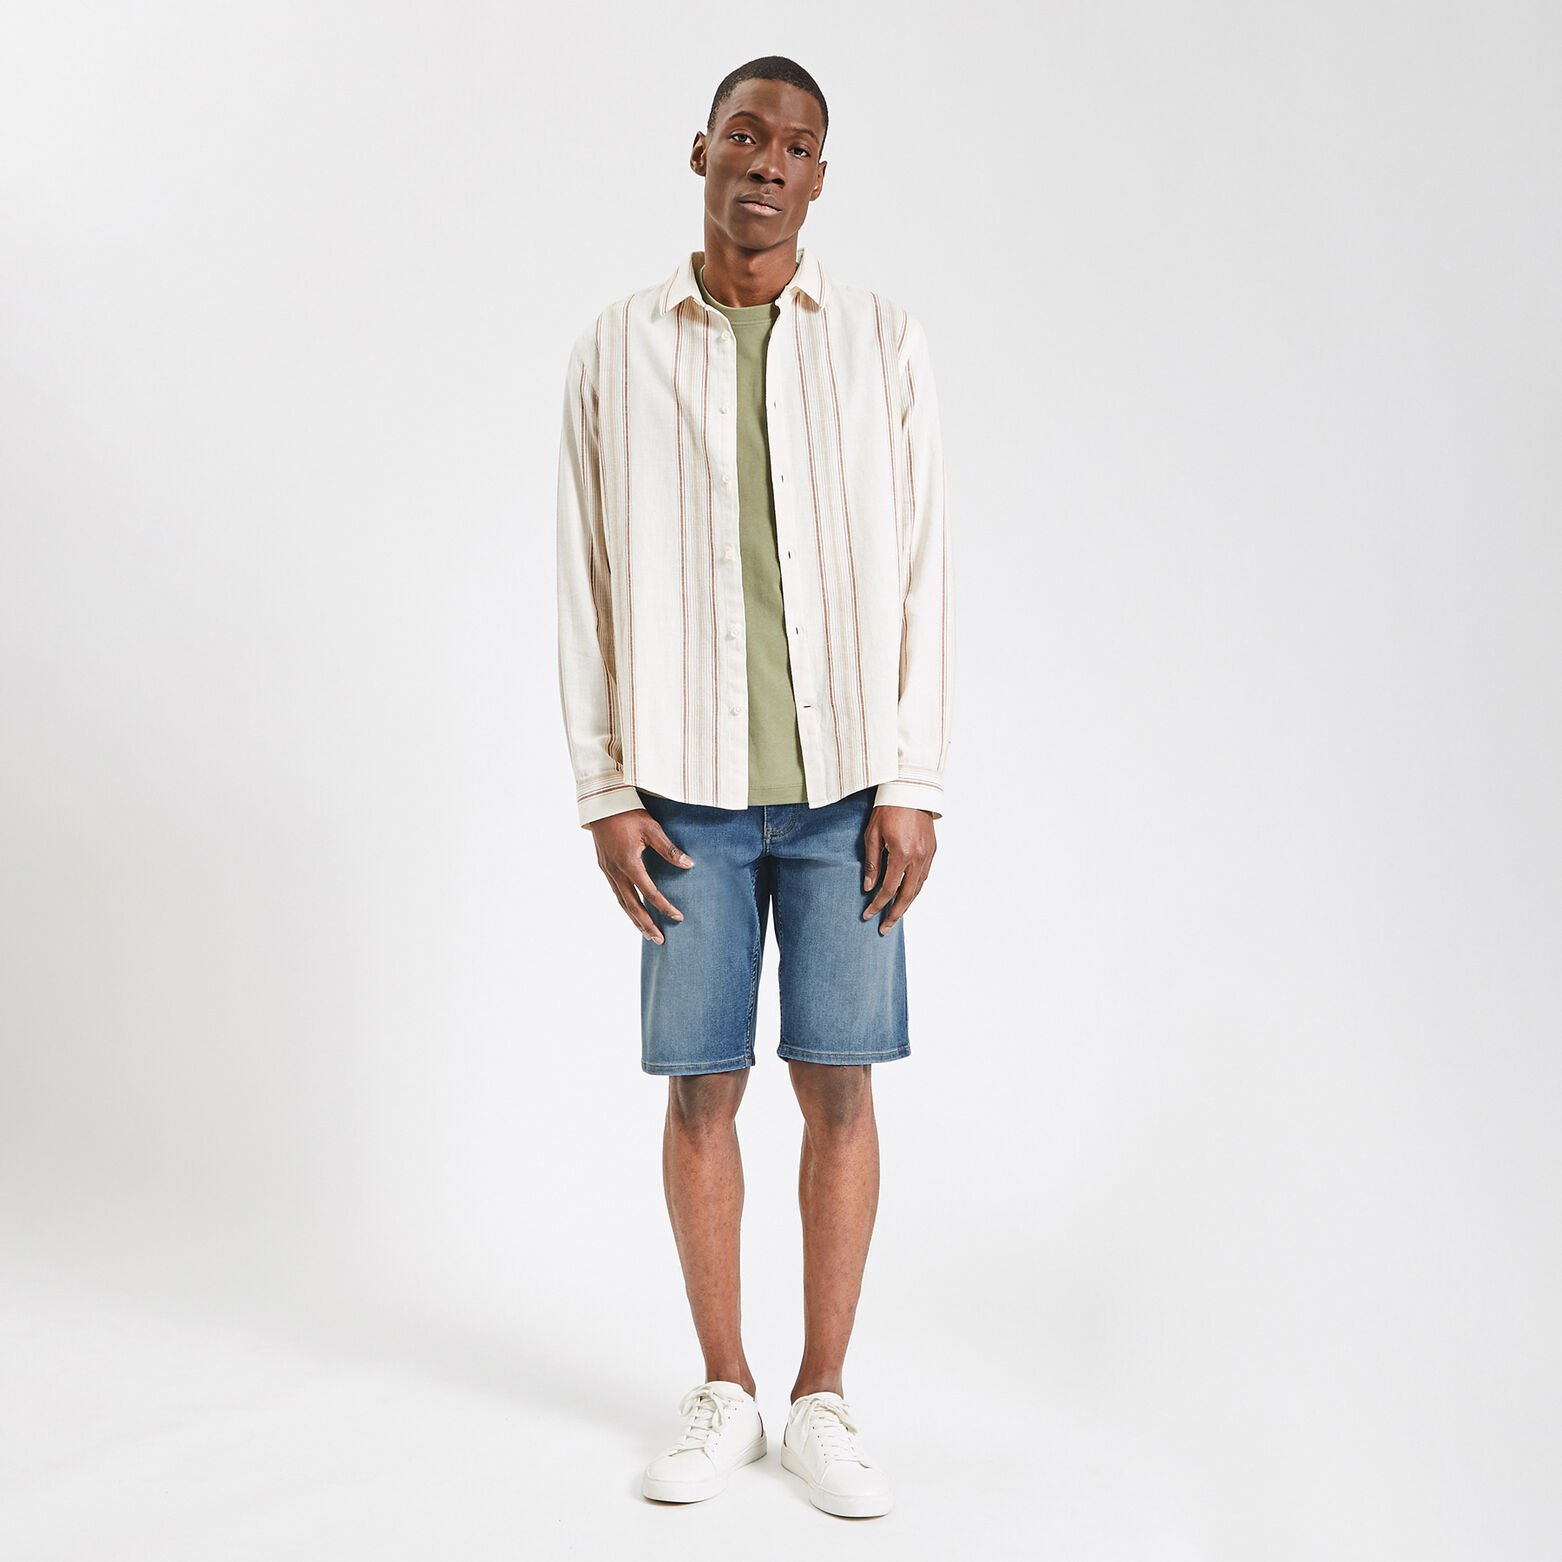 Bermuda in urbanflex jeans en gerecycled polyester